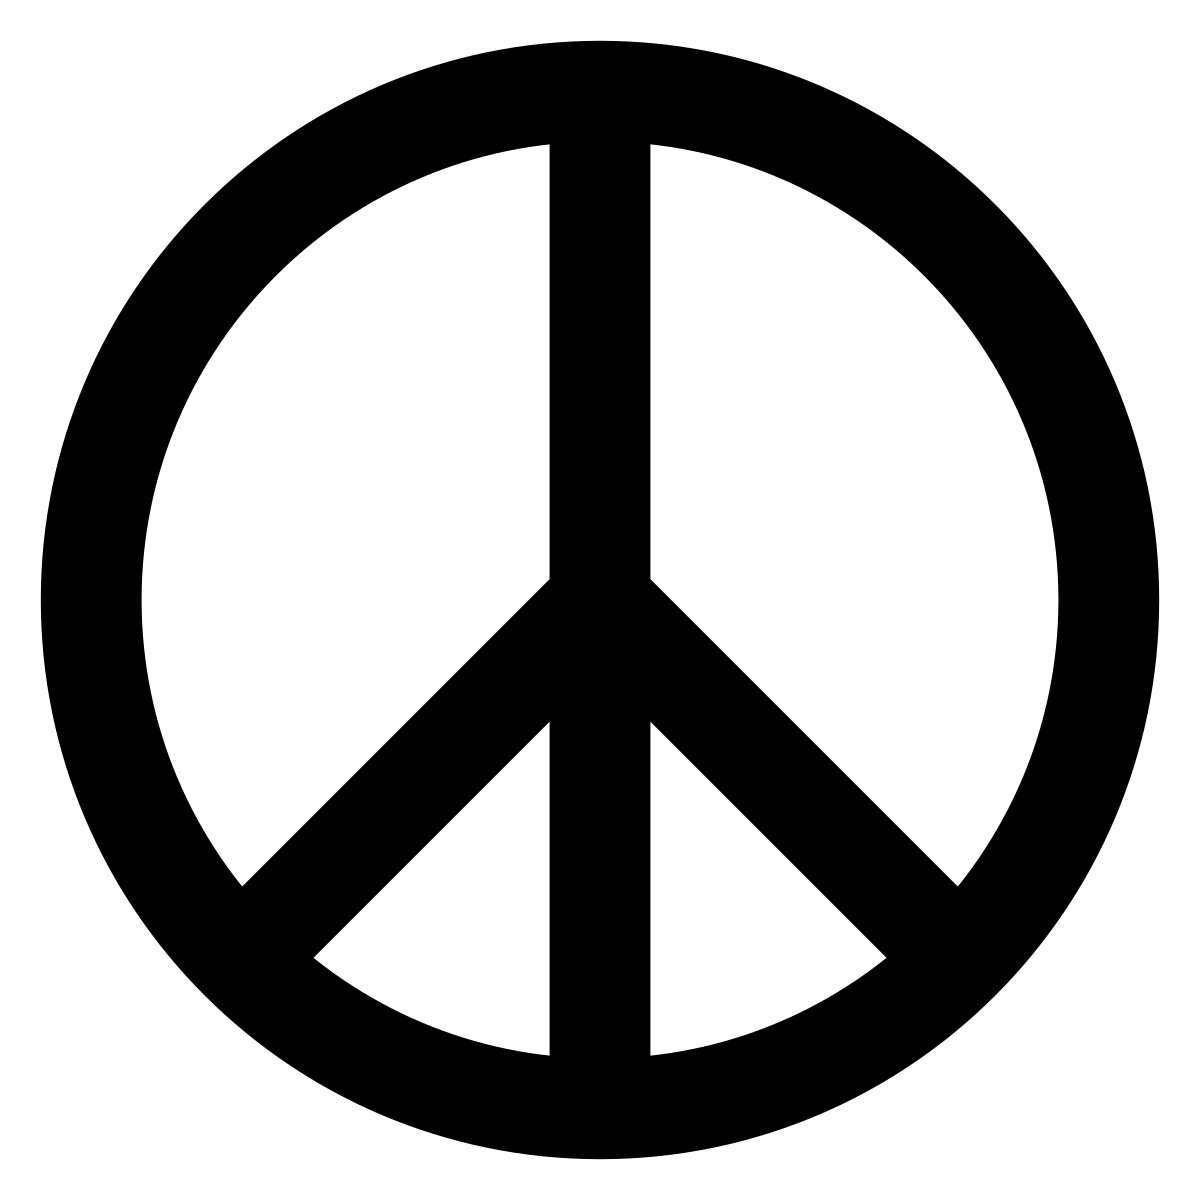 Black White Circle Logo - Peace symbols